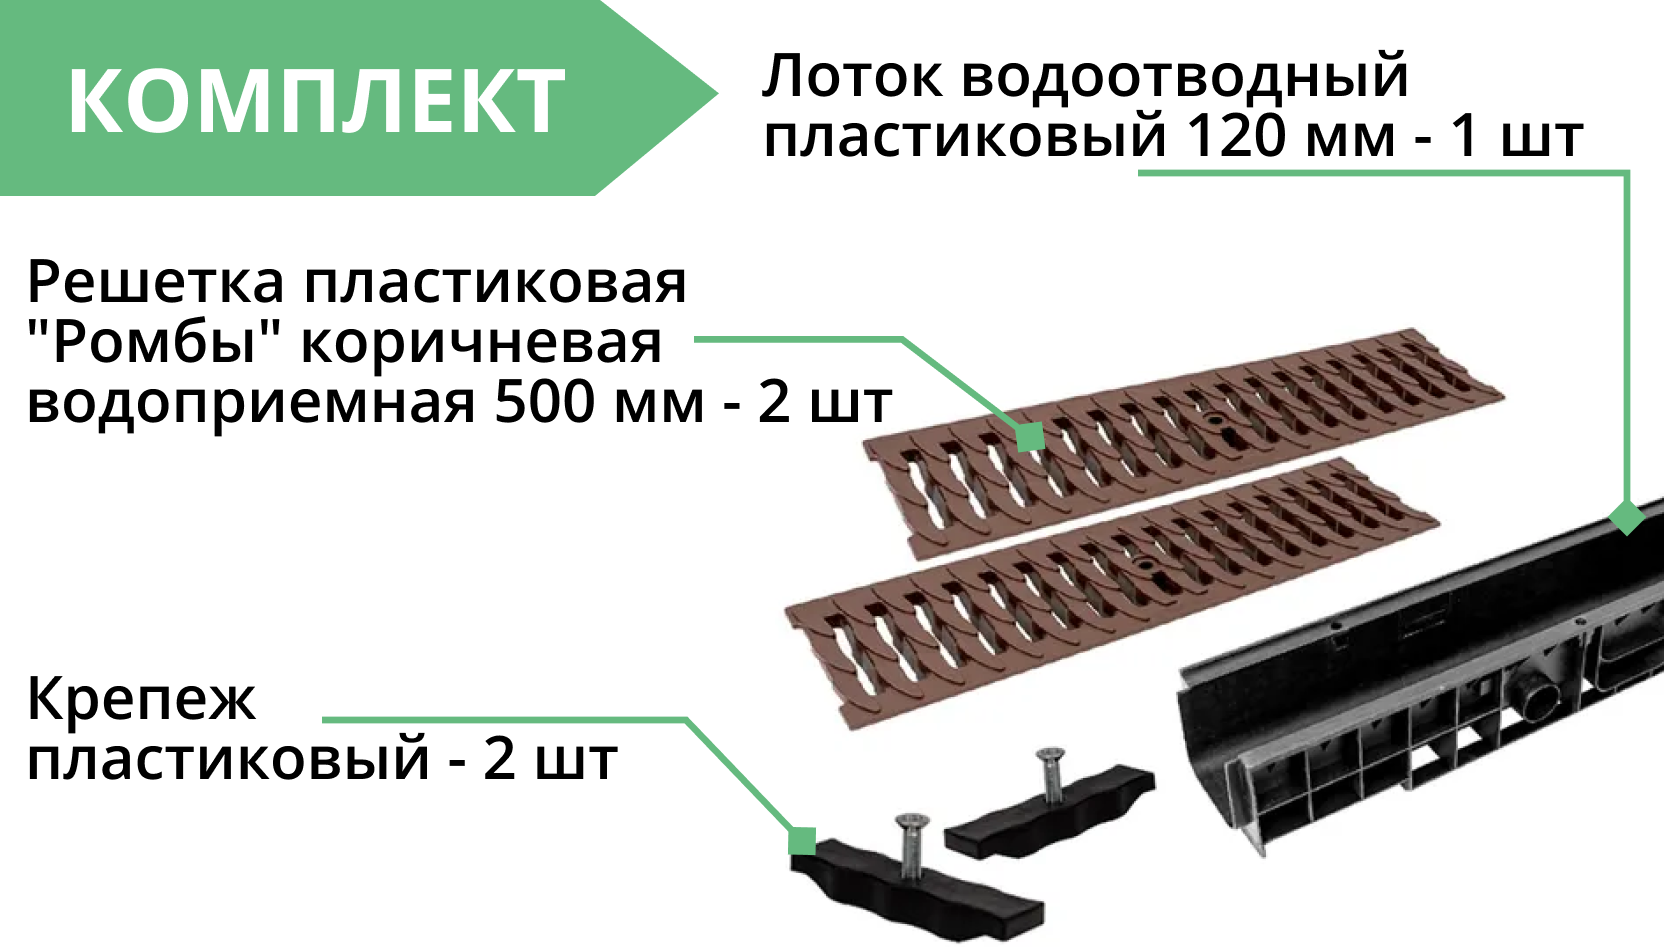 Комплект: Лоток Европартнер 120 мм с пластиковыми решетками коричневыми "Ромбы" 1 метр 3